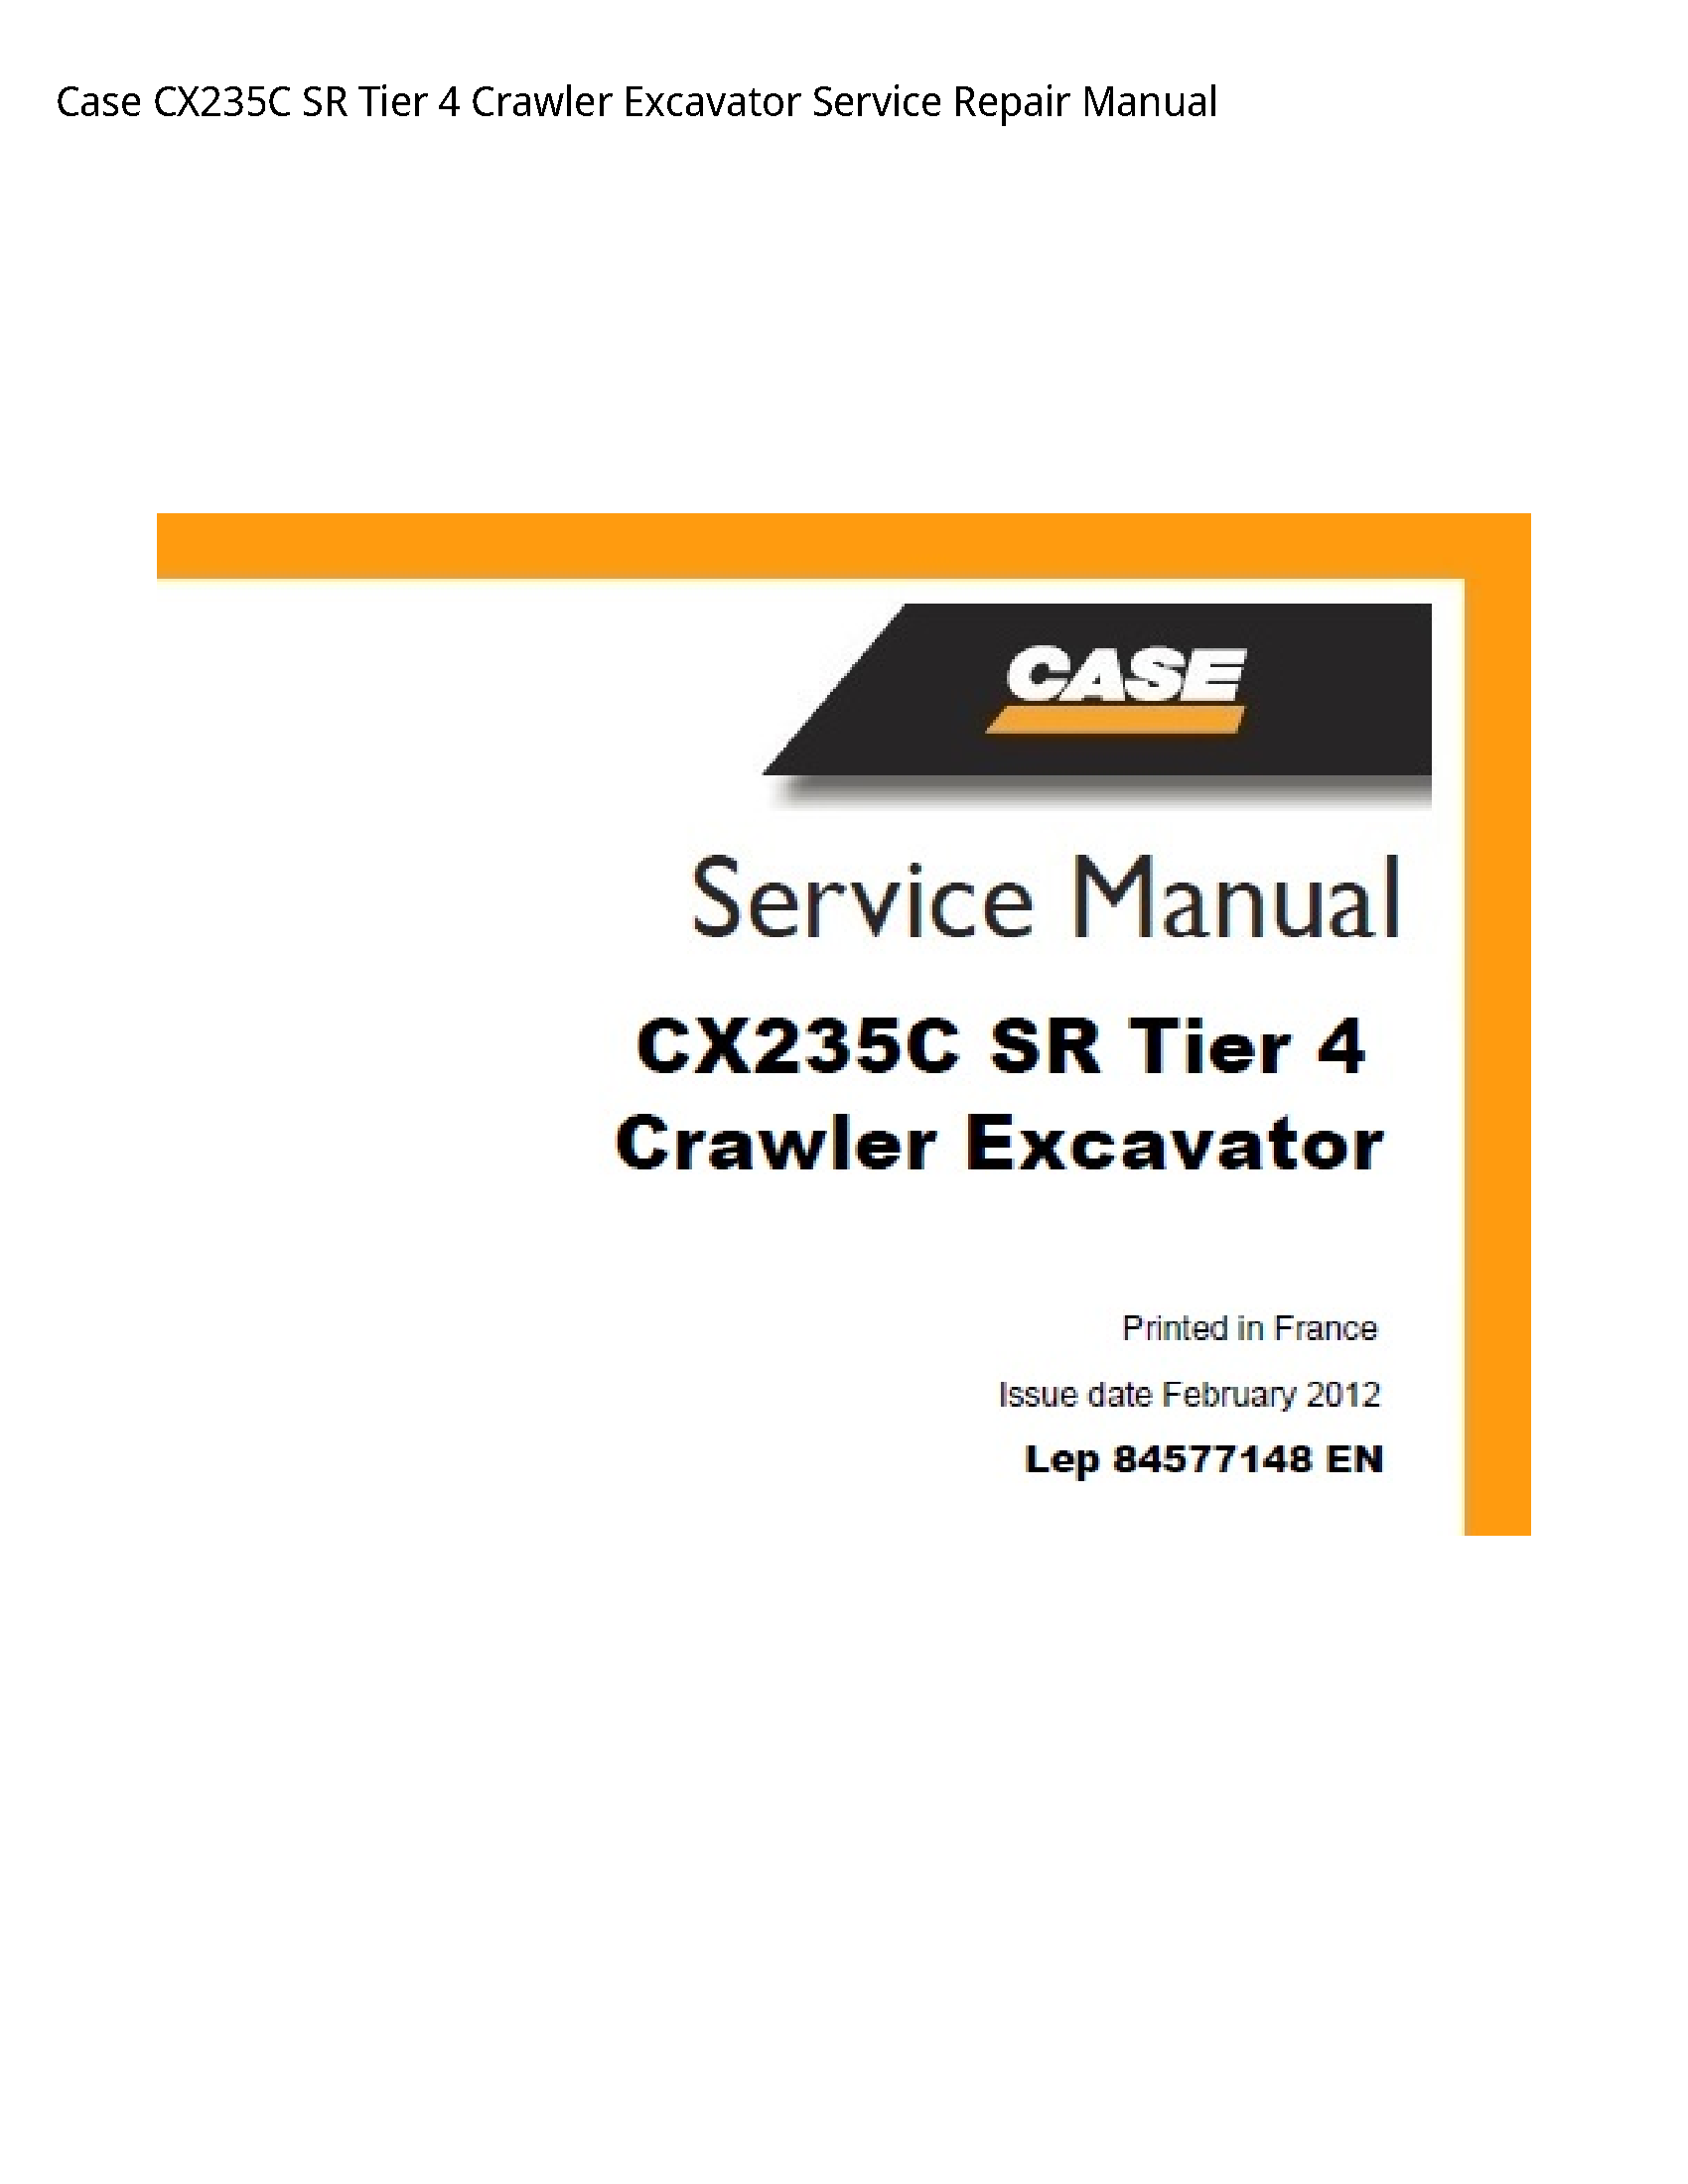 Case/Case IH CX235C SR Tier Crawler Excavator manual